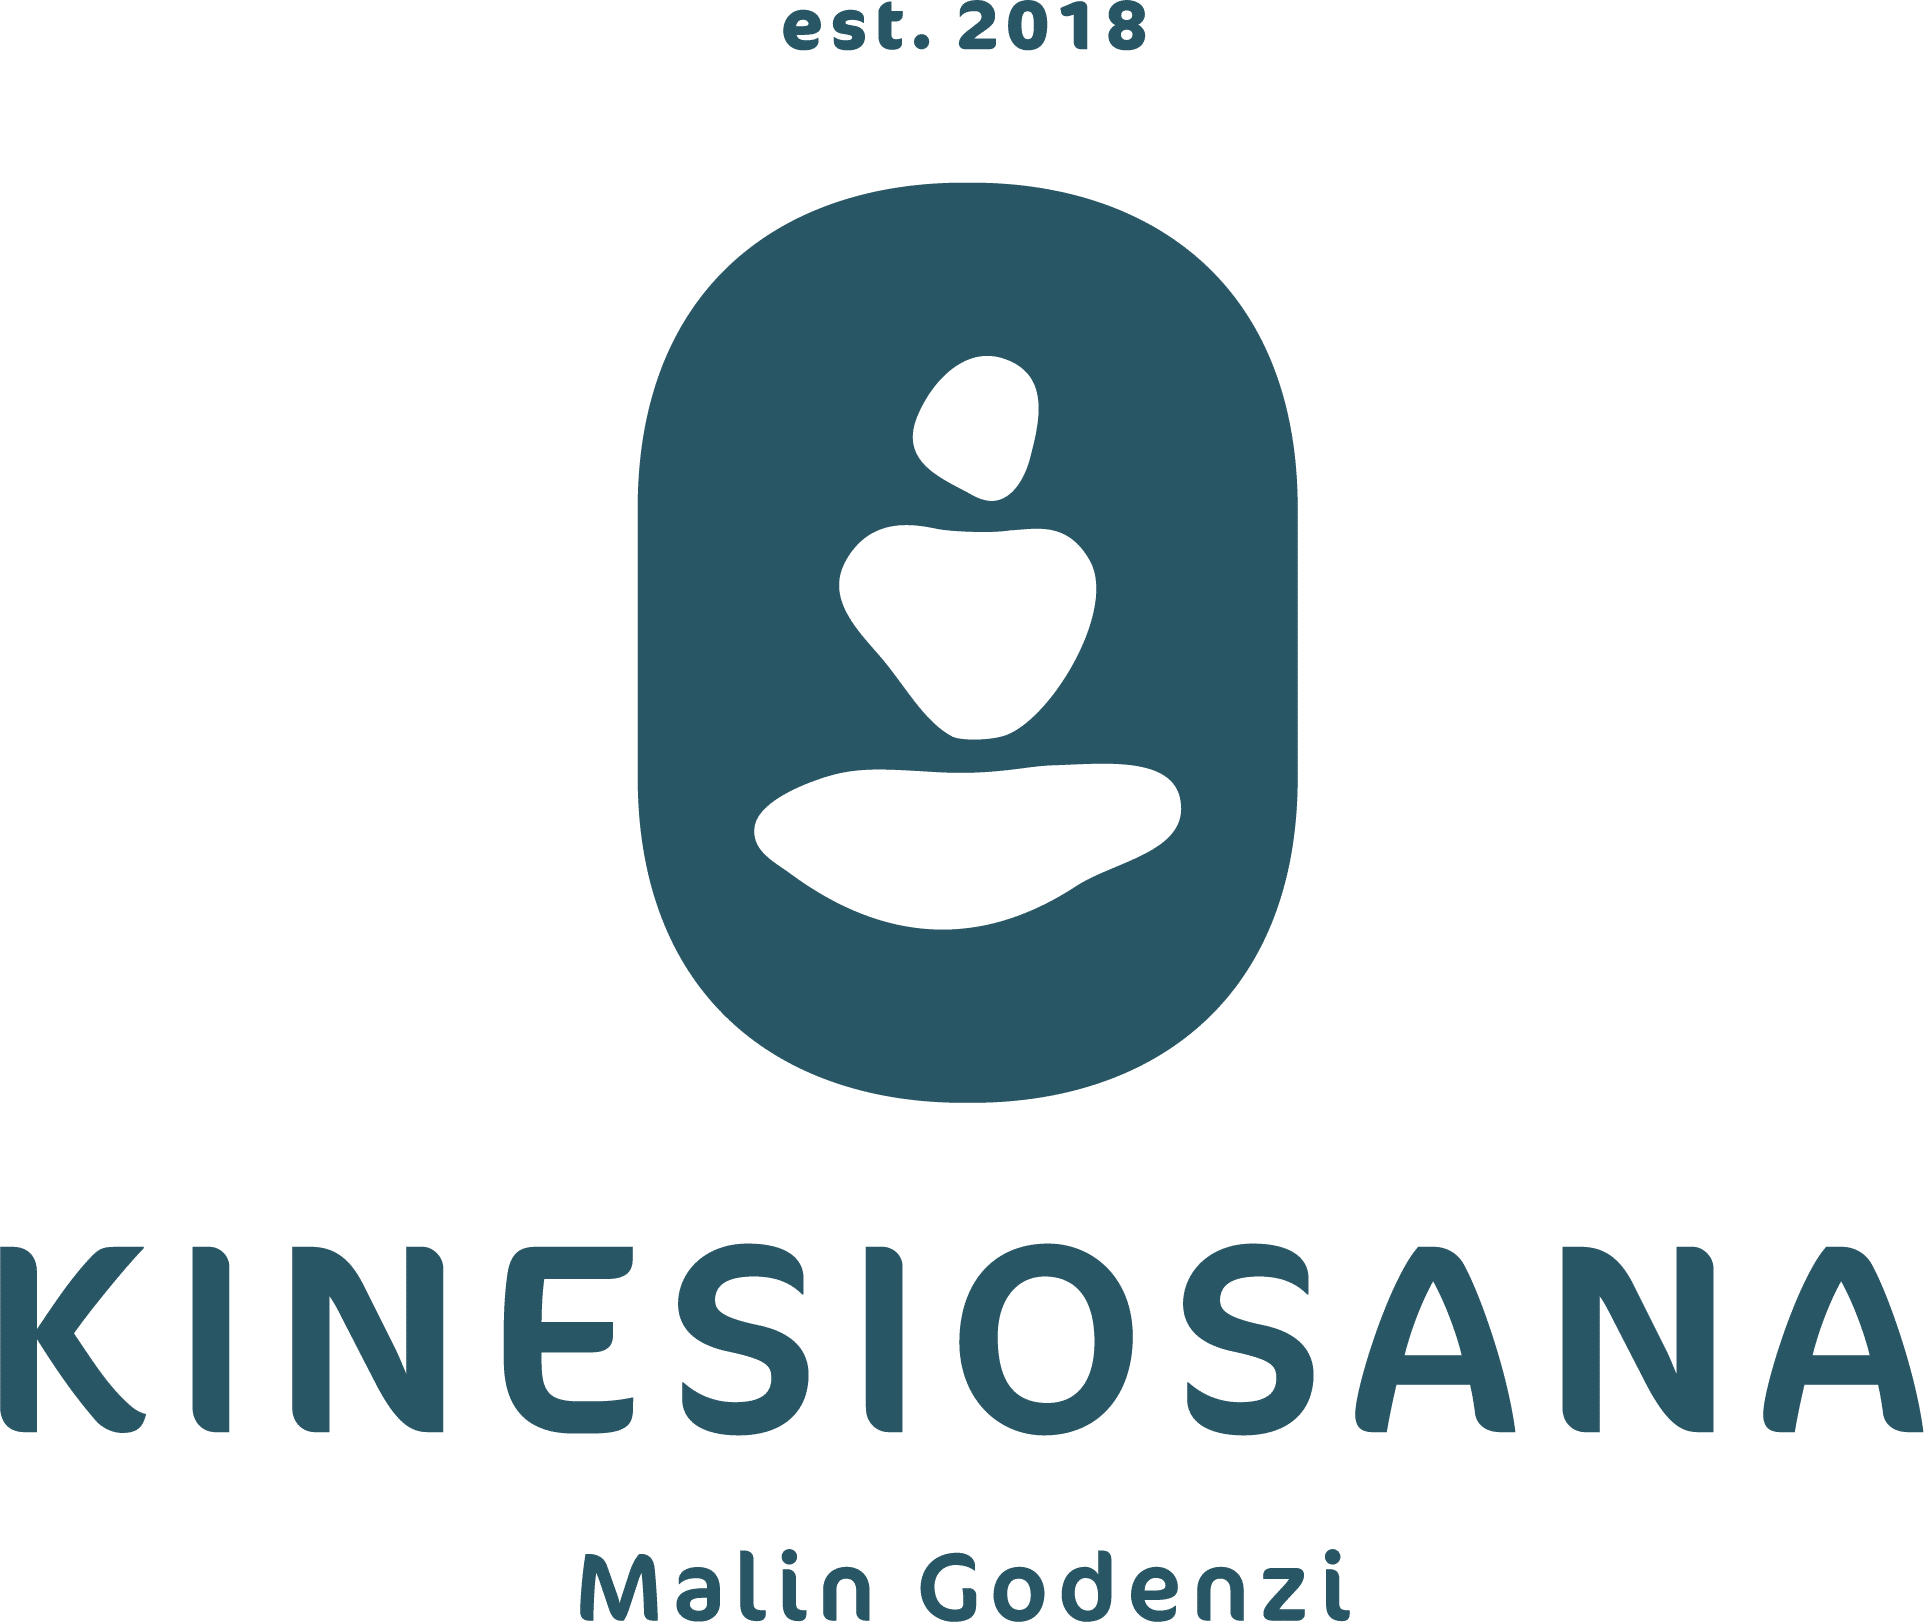 KinesioSana Logo